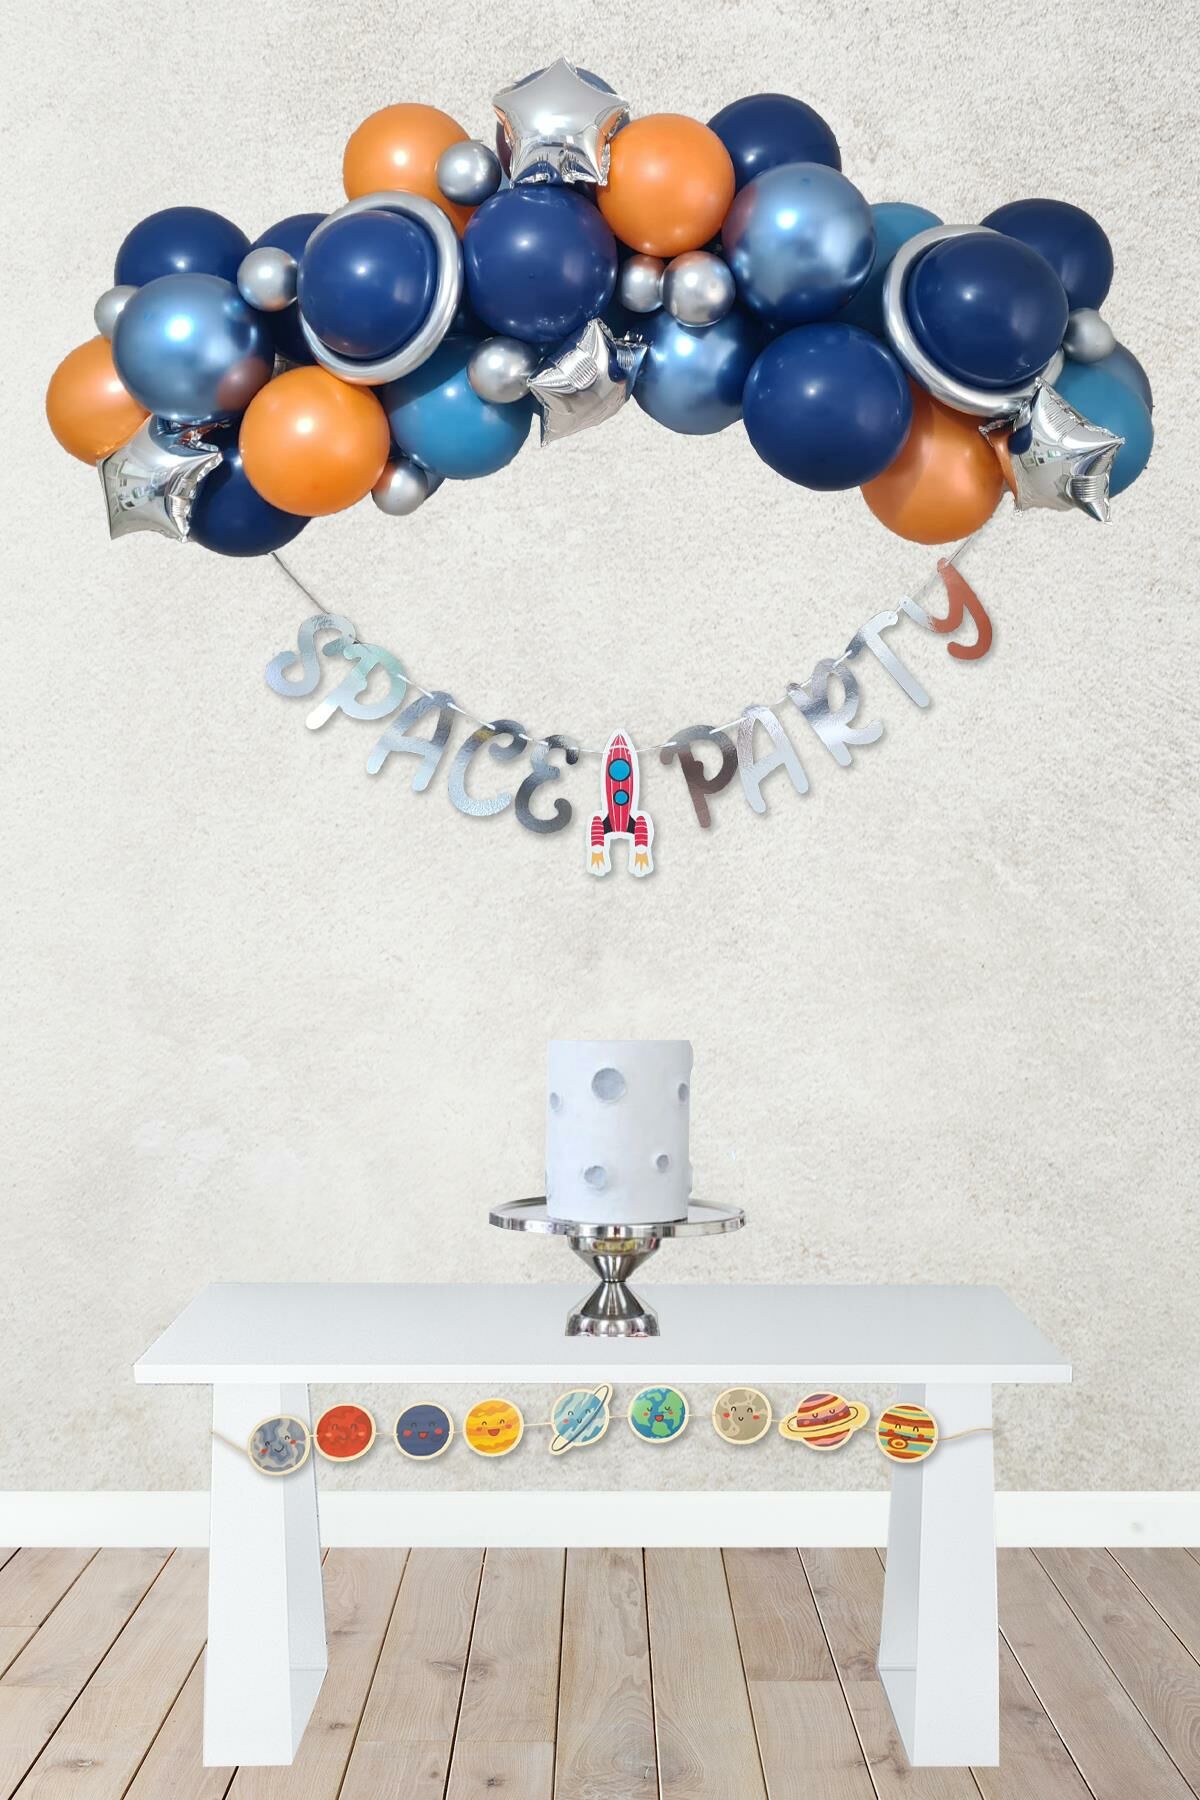 Uzay Tema Doğum Günü Bannerlı Balon Zinciri Seti Uzay Gezegen Balon Zinciri